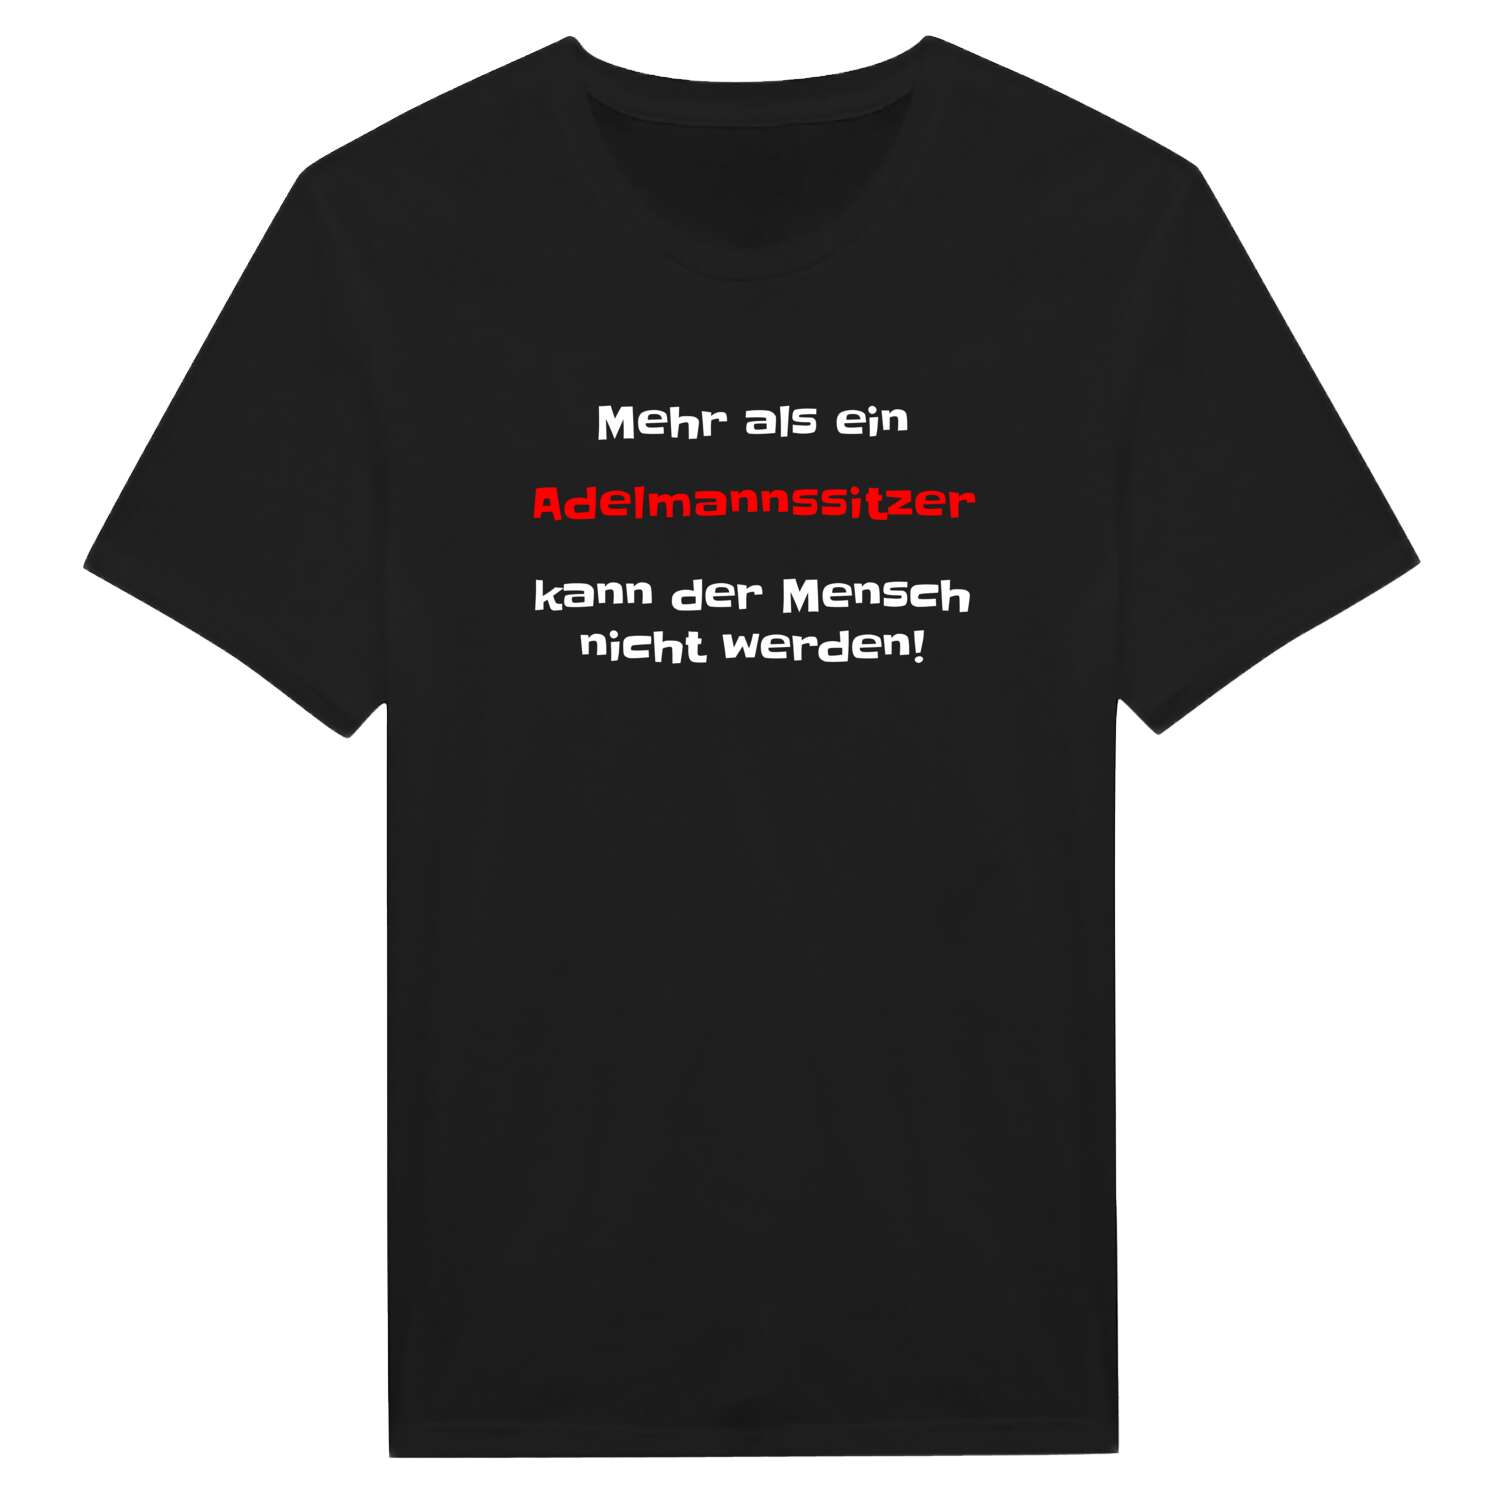 Adelmannssitz T-Shirt »Mehr als ein«